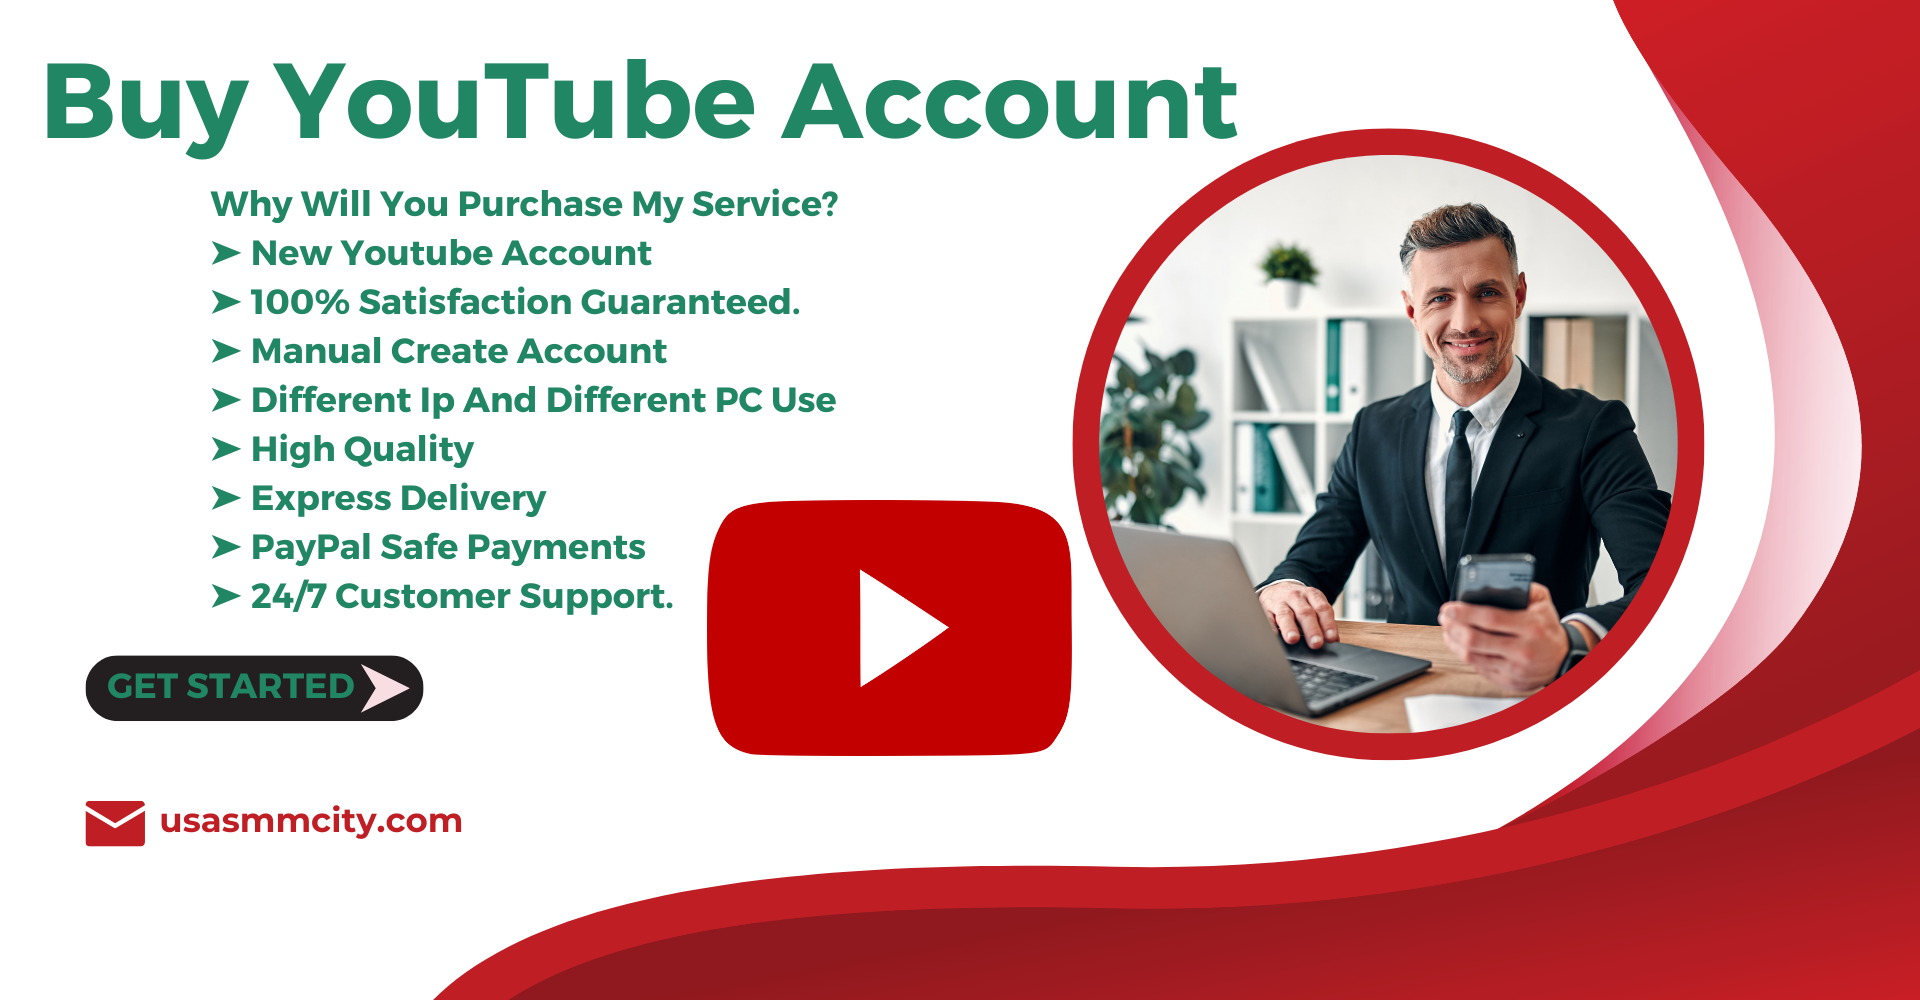 Buy YouTube Account
